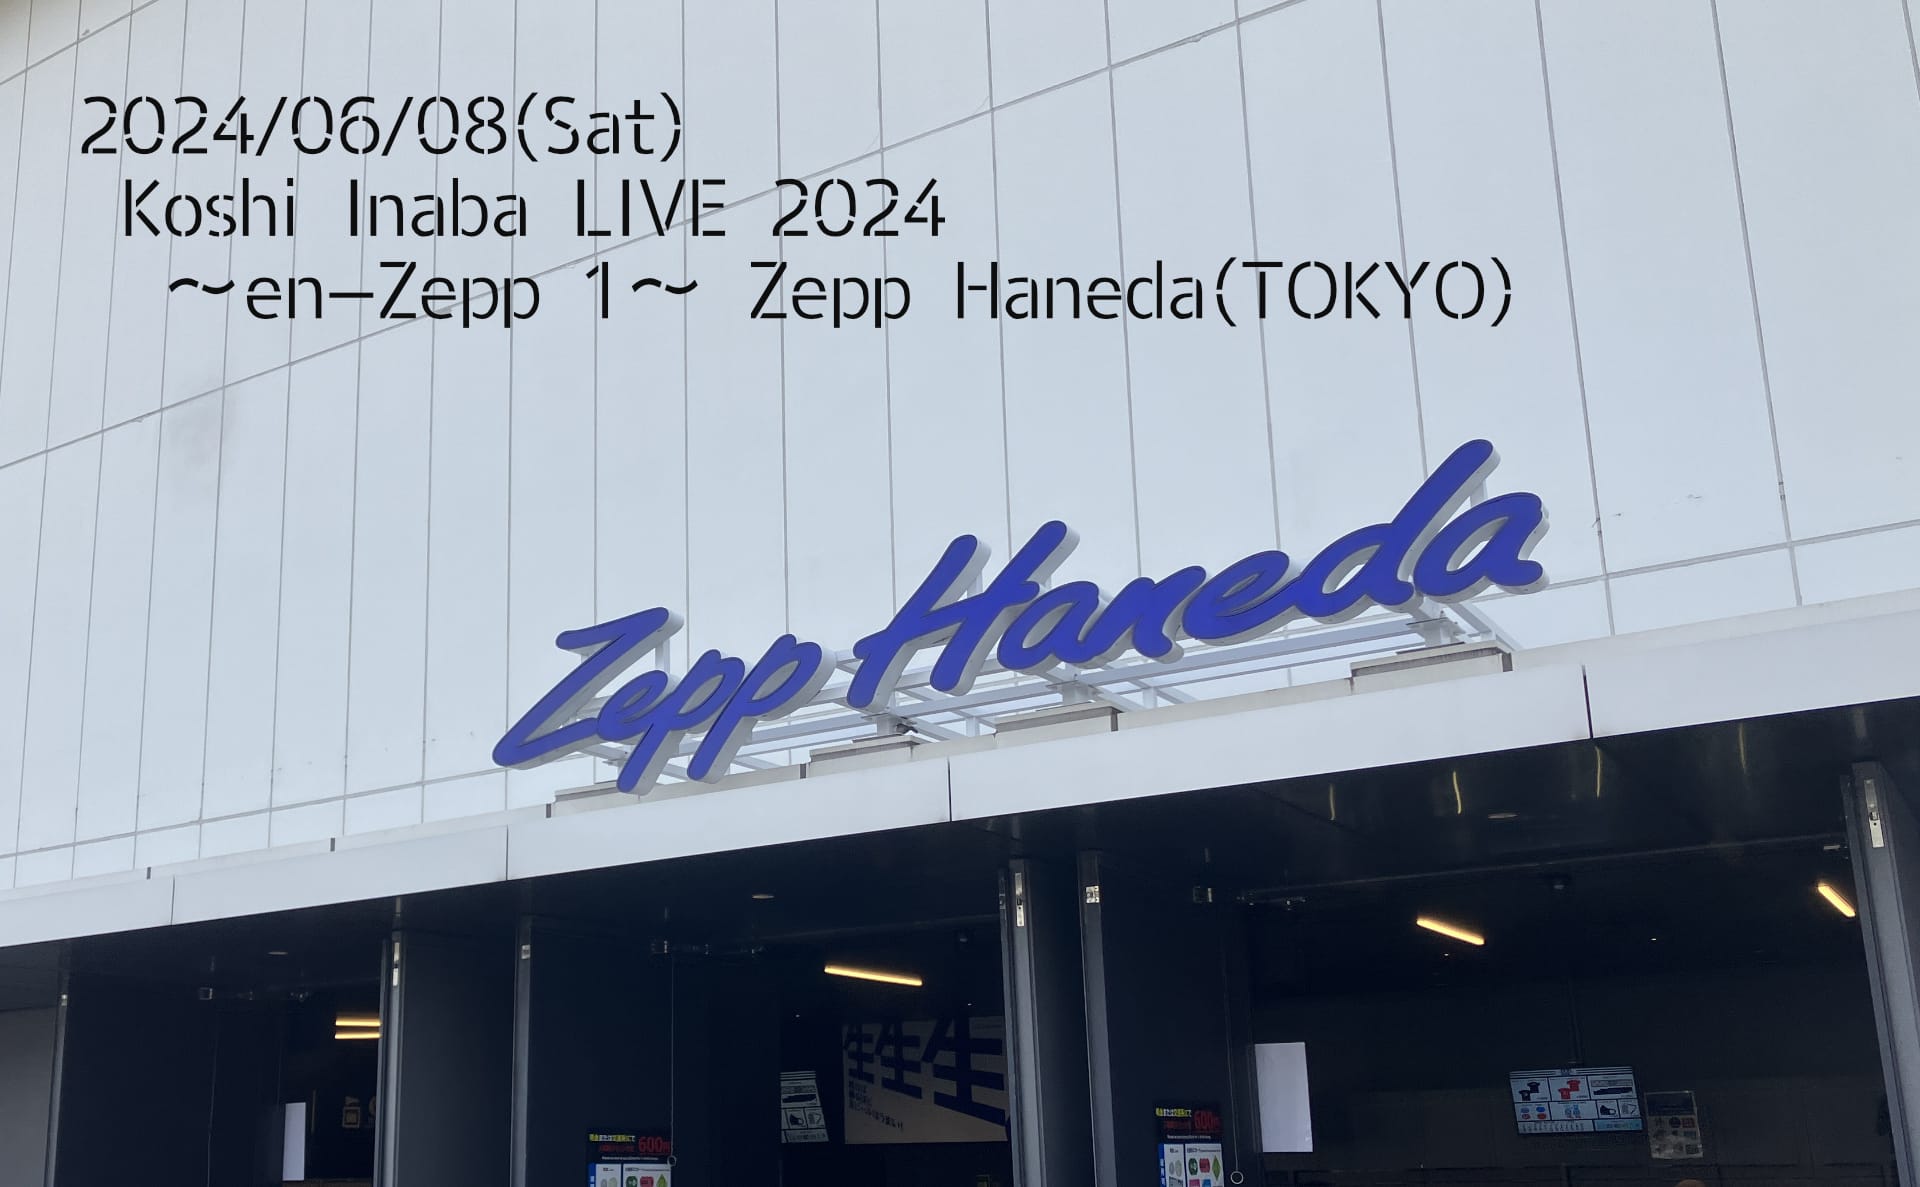 稲葉浩志, Koshi Inaba LIVE 2024 〜en-Zepp 1〜, Zepp Haneda(TOKYO)